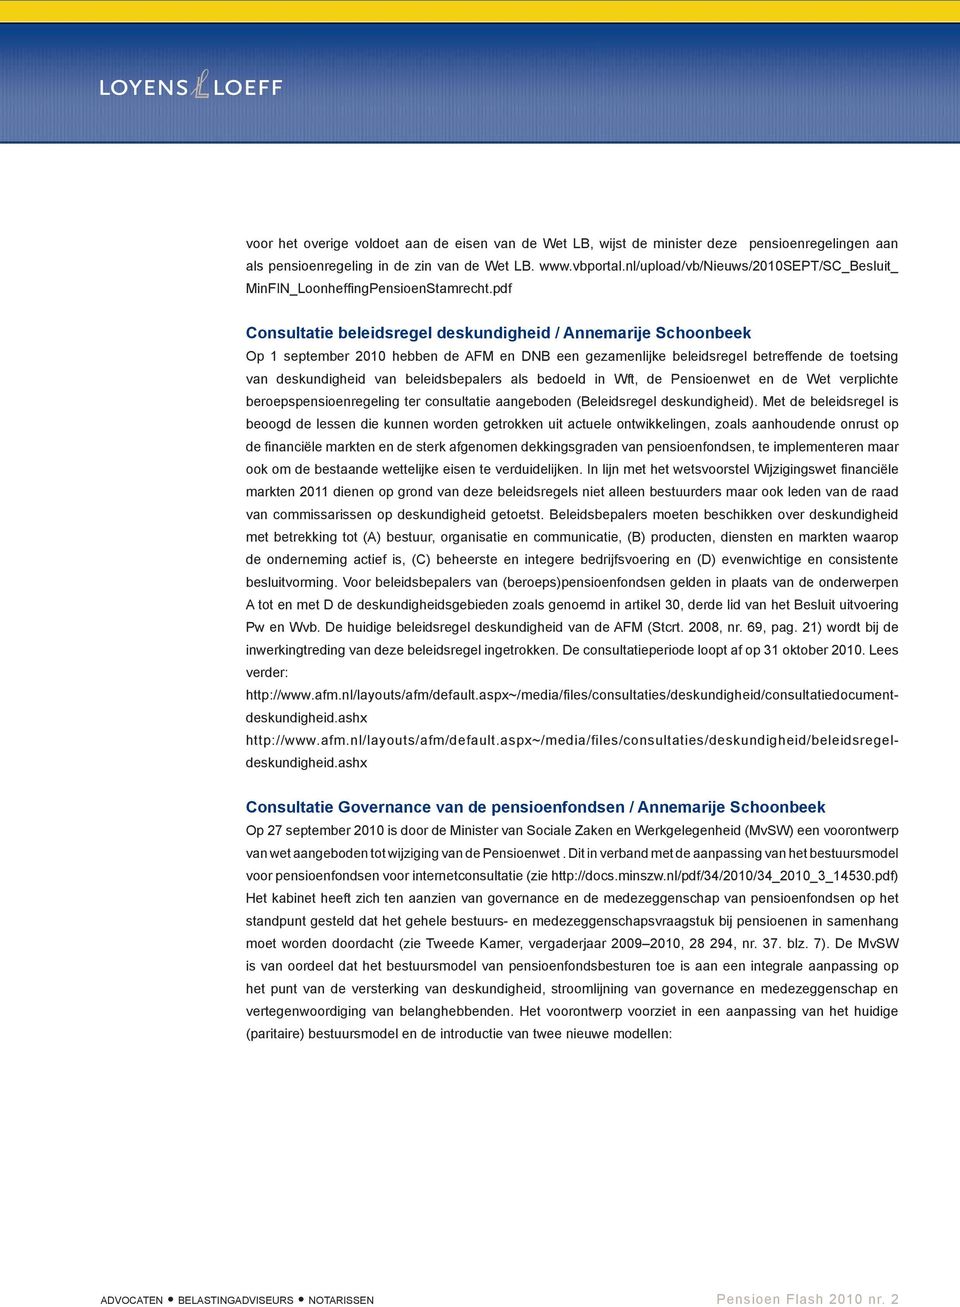 pdf Consultatie beleidsregel deskundigheid / Annemarije Schoonbeek Op 1 september 2010 hebben de AFM en DNB een gezamenlijke beleidsregel betreffende de toetsing van deskundigheid van beleidsbepalers